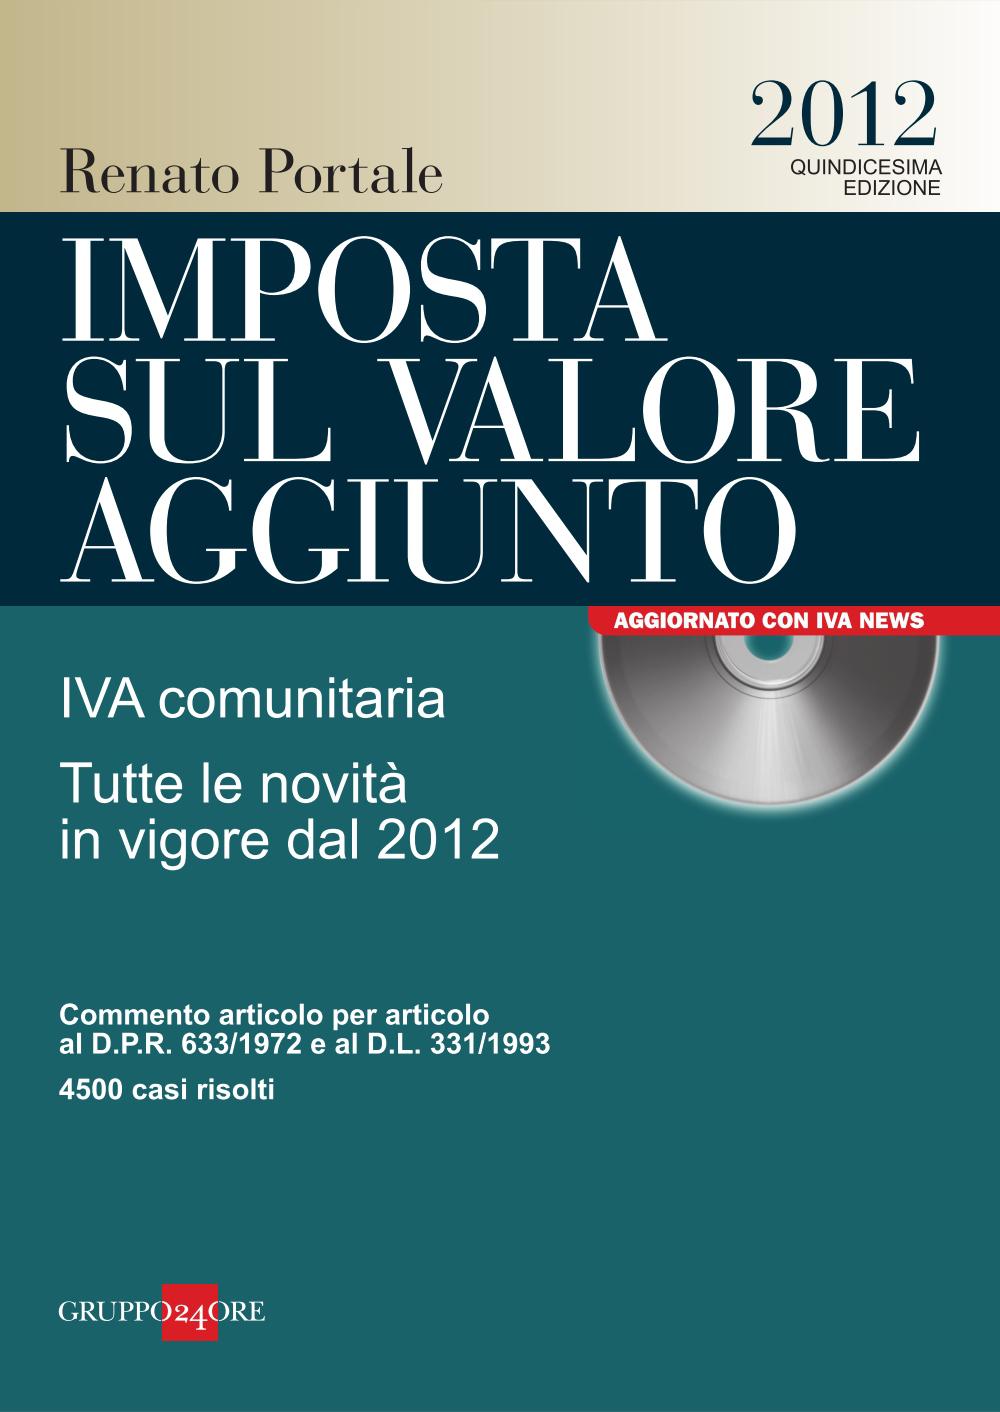 Imposta sul valore aggiunto 2012 - Renato Portale